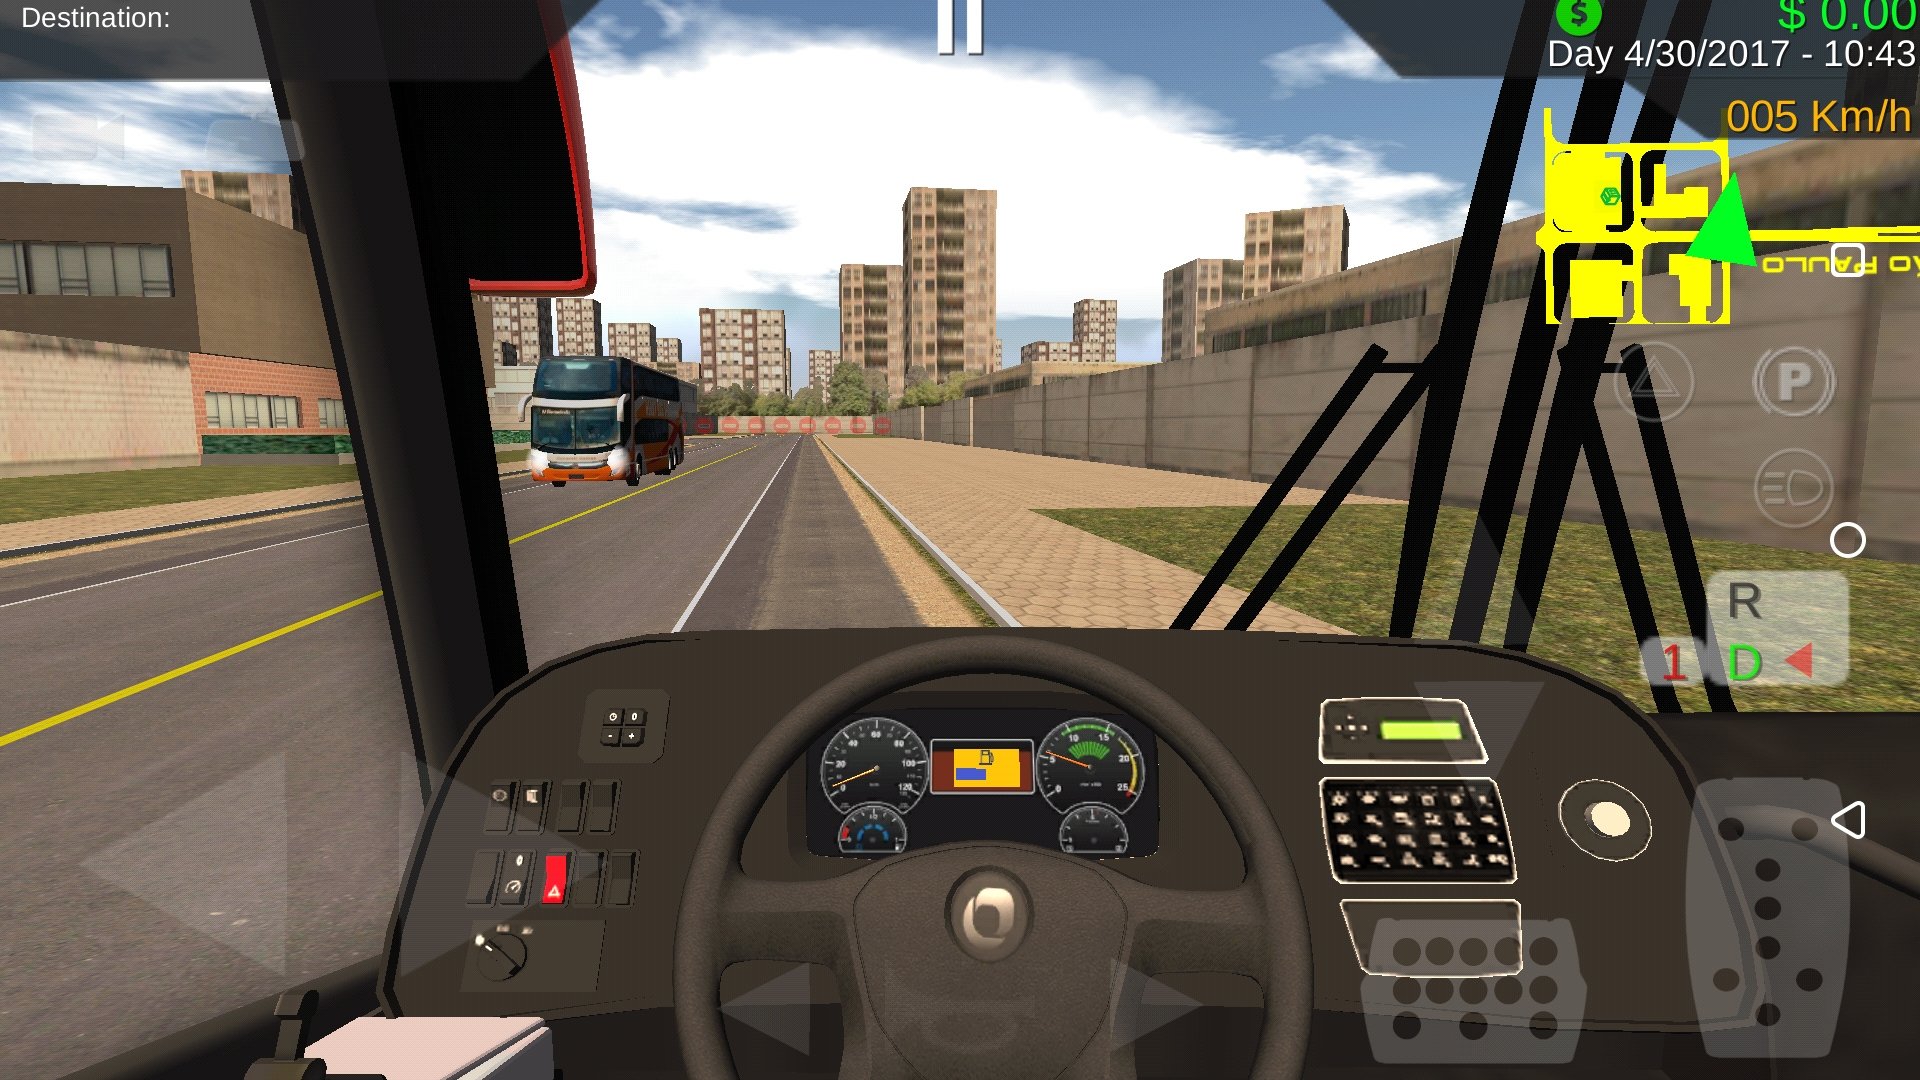 downloading Bus Simulator 2023